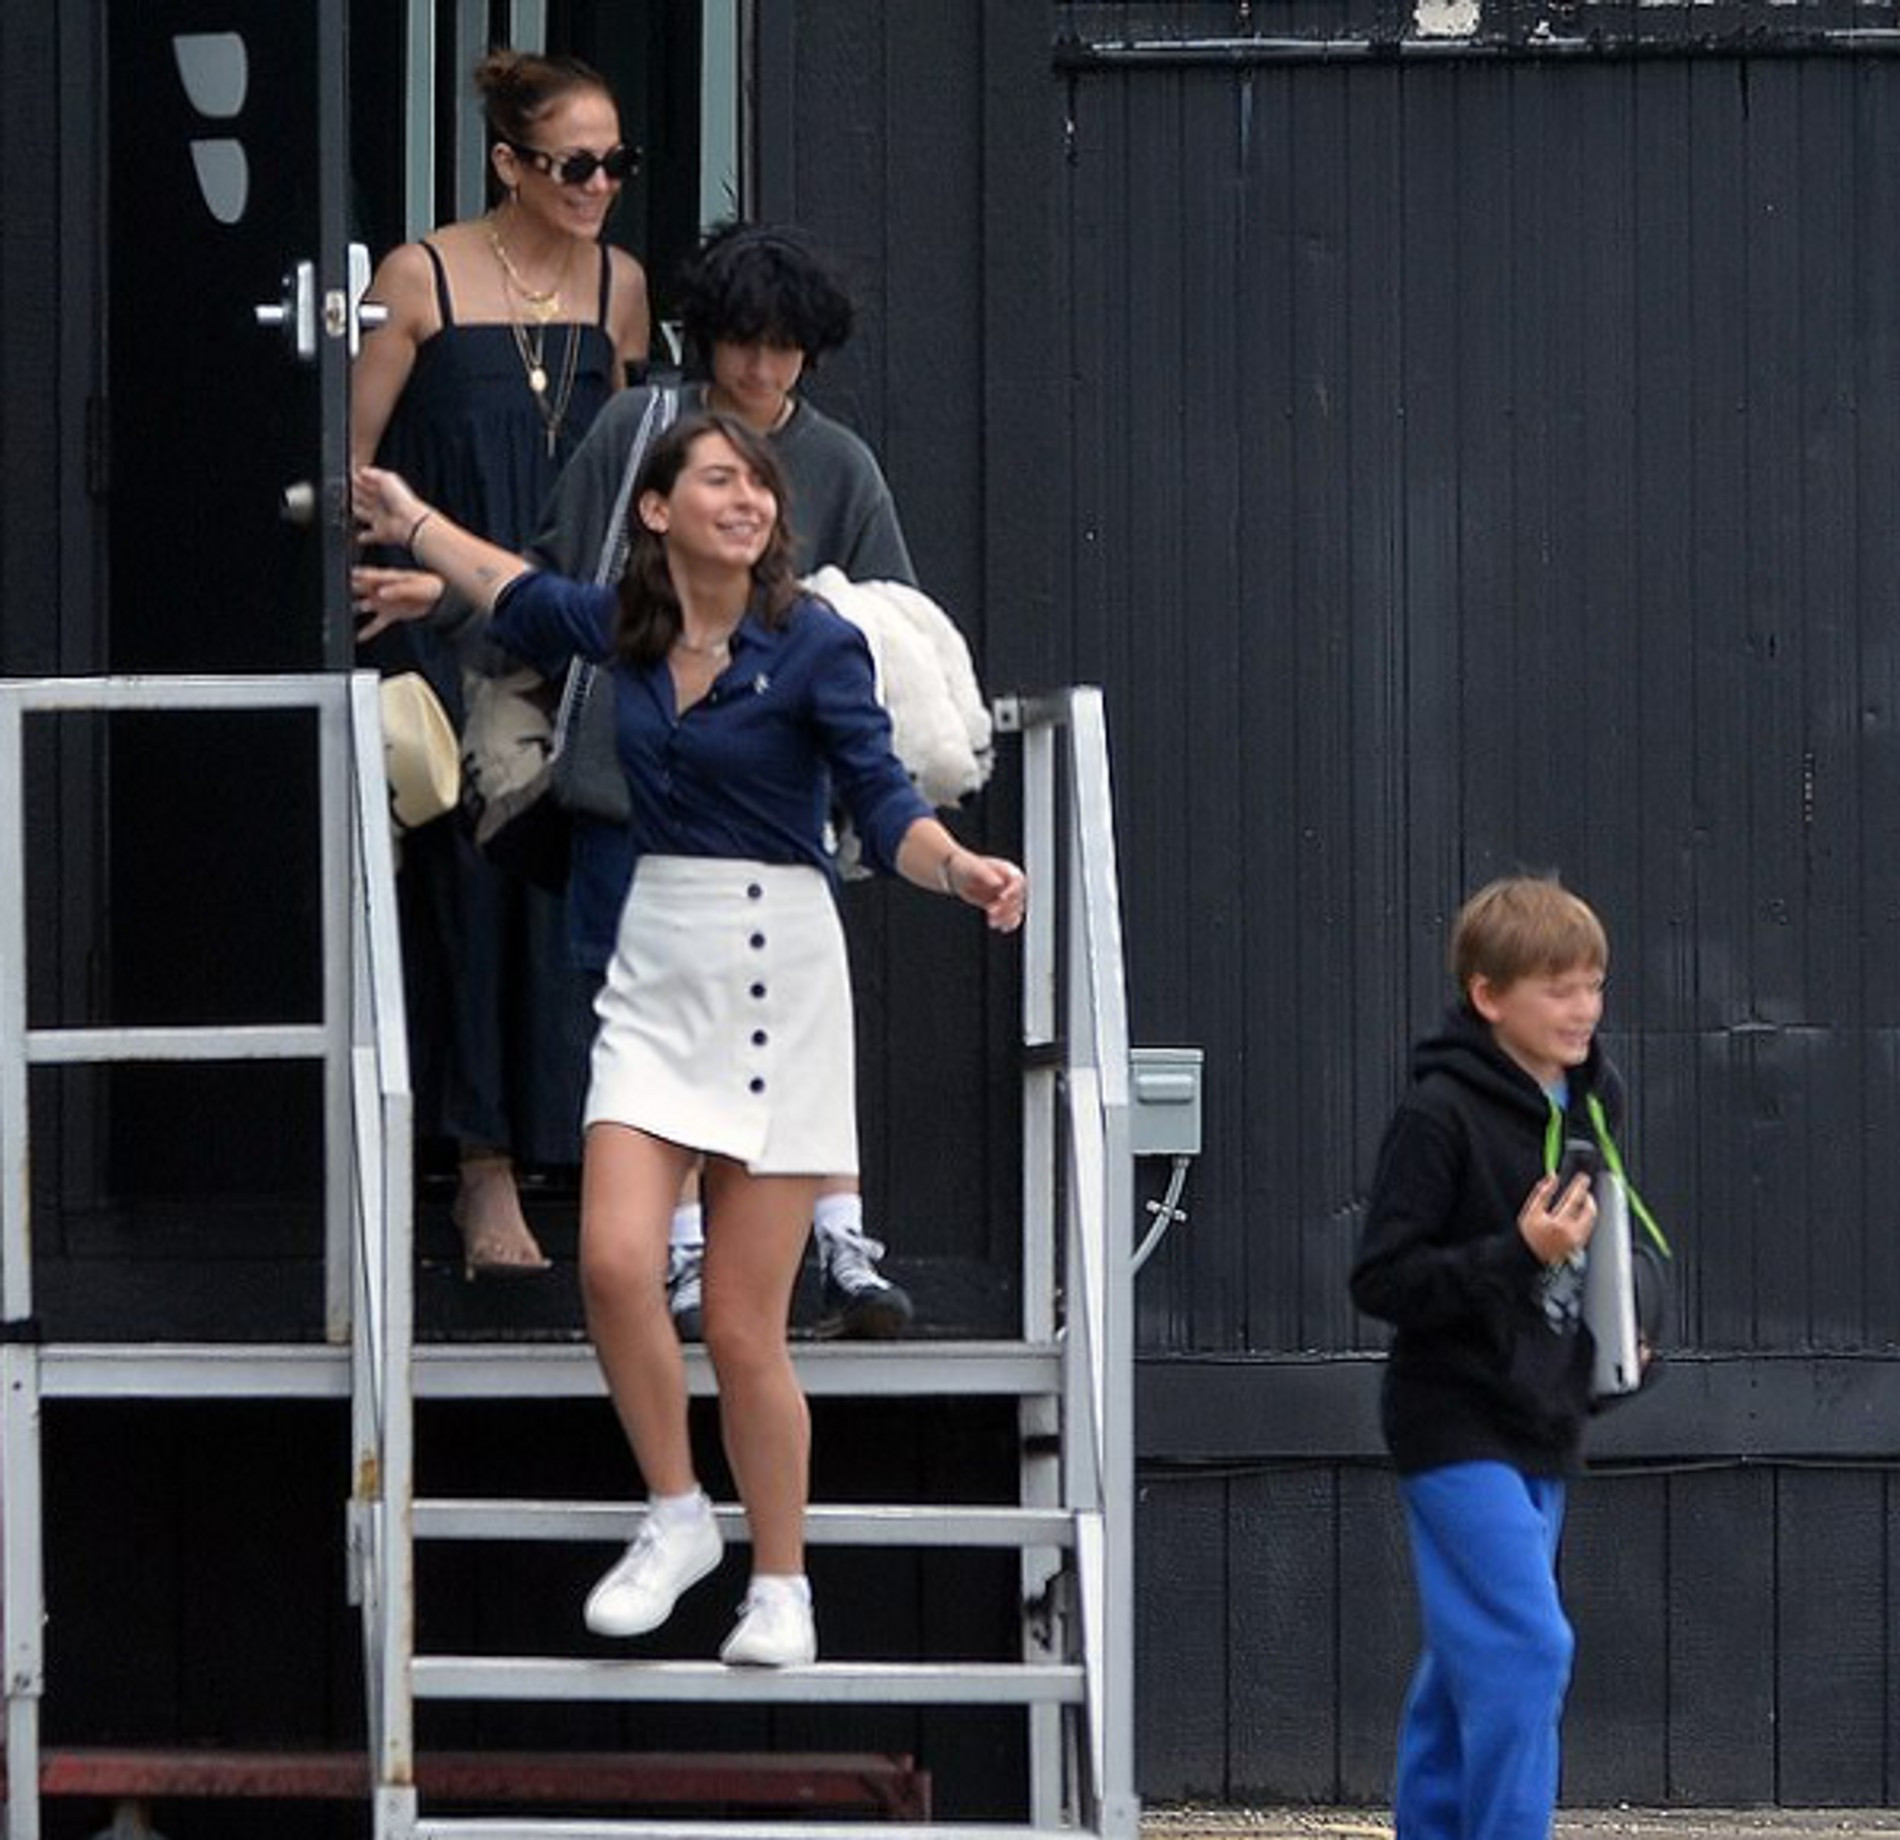 Дженнифер Лопес идет на посадку в вертолет
Фото: Daily Mail